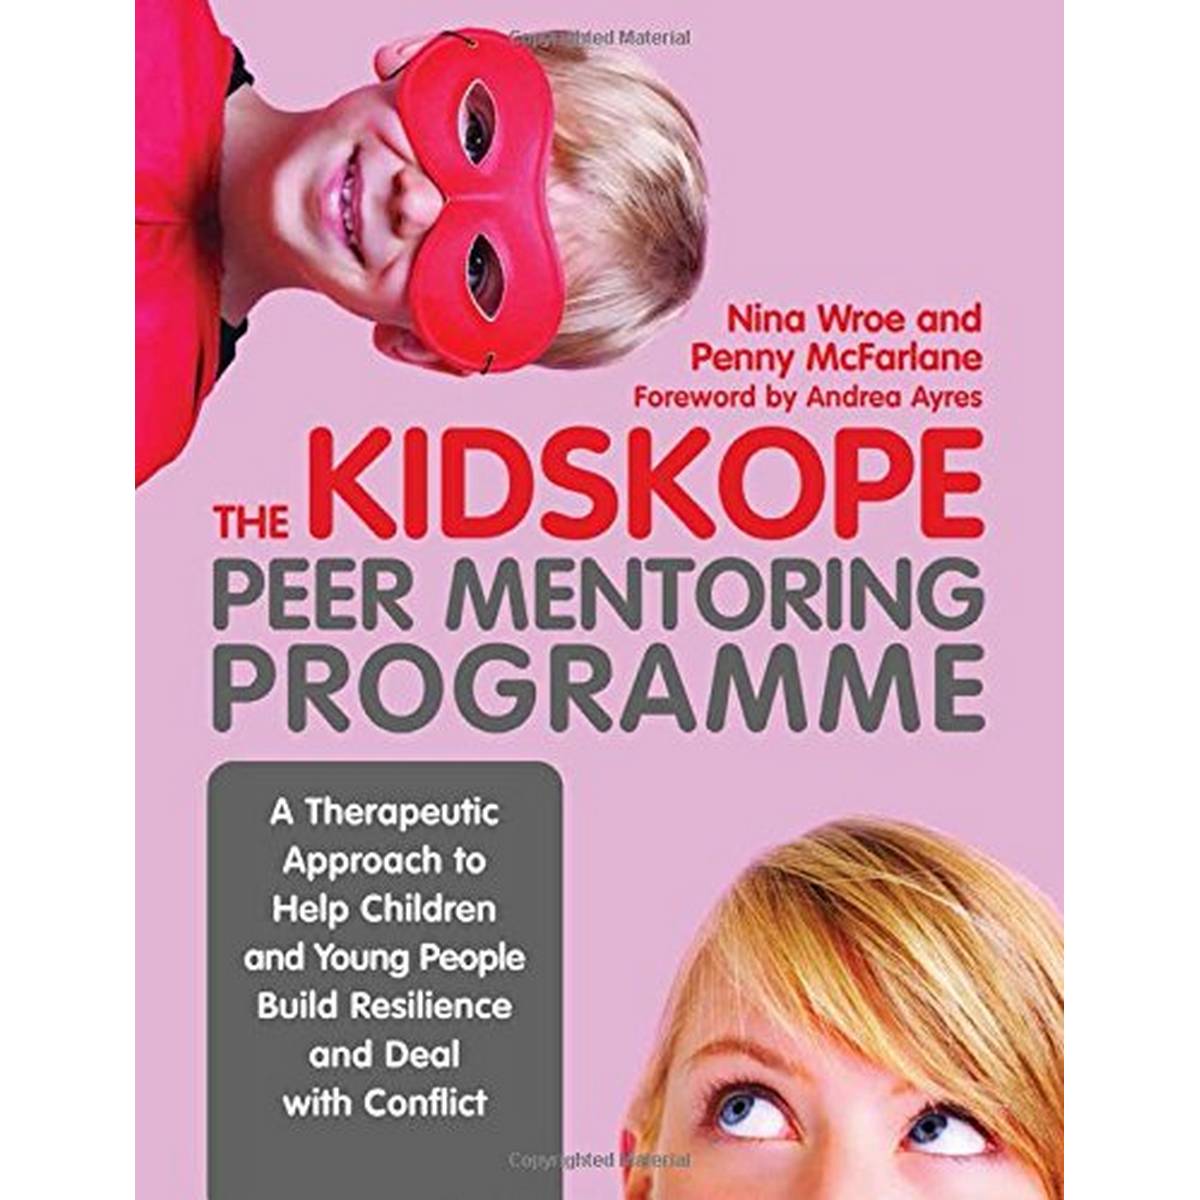 The KidsKope Peer Mentoring Programme